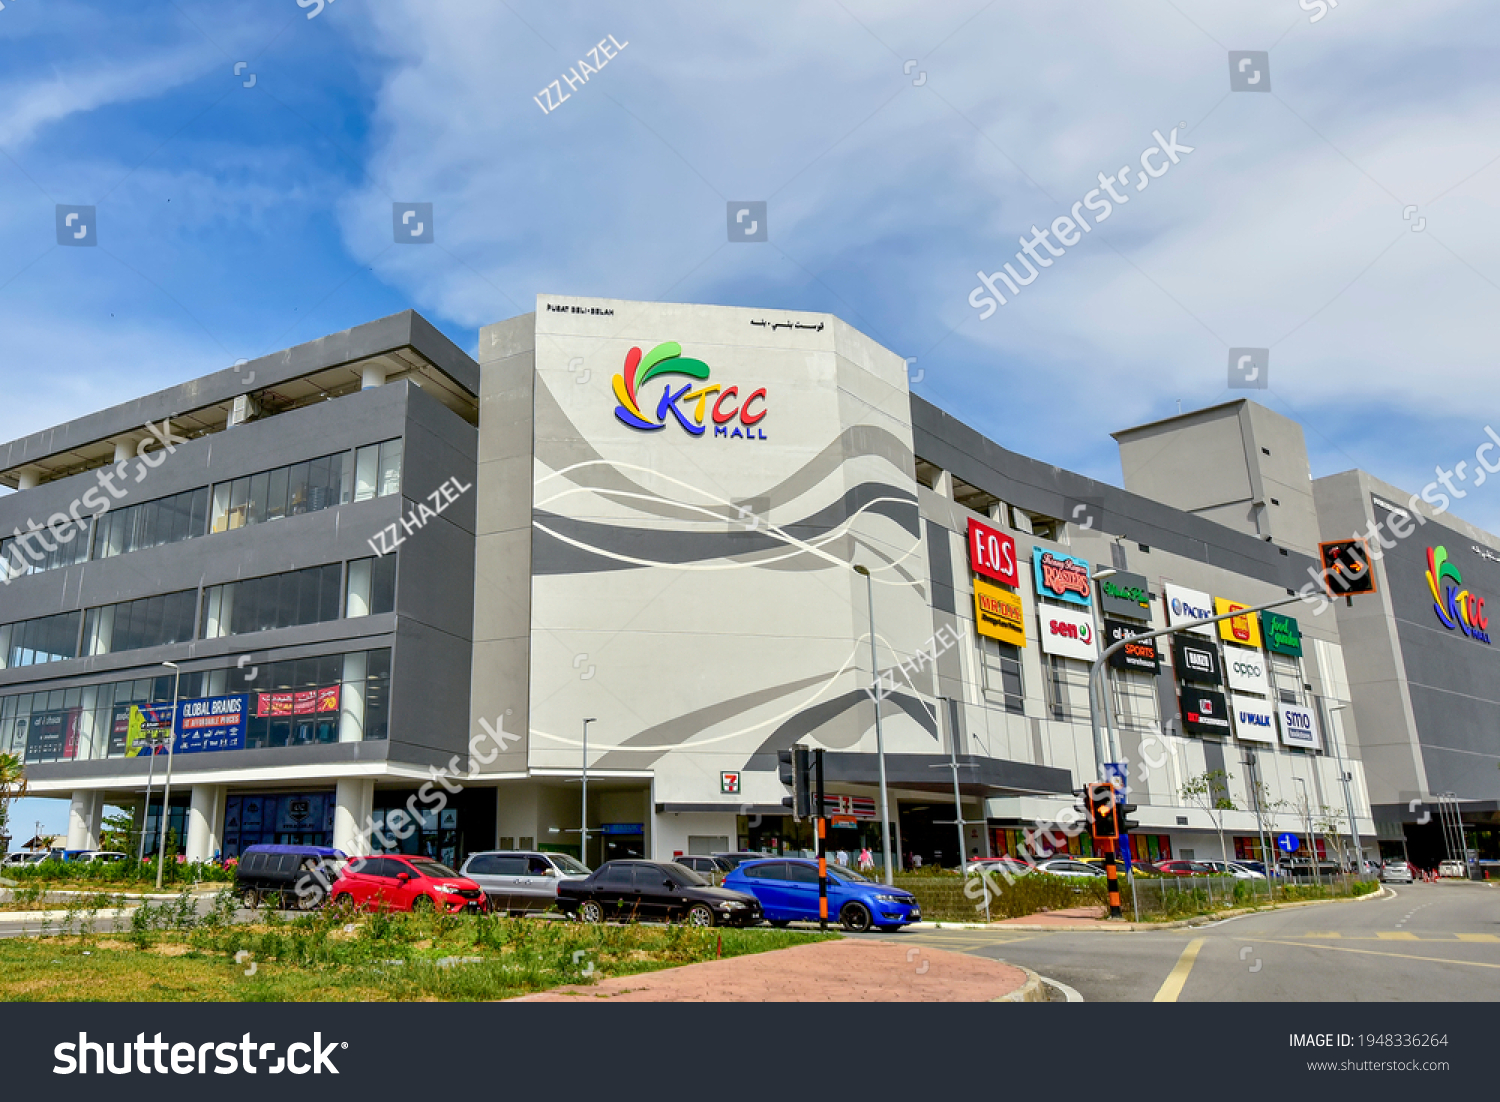 Ktcc mall cinema